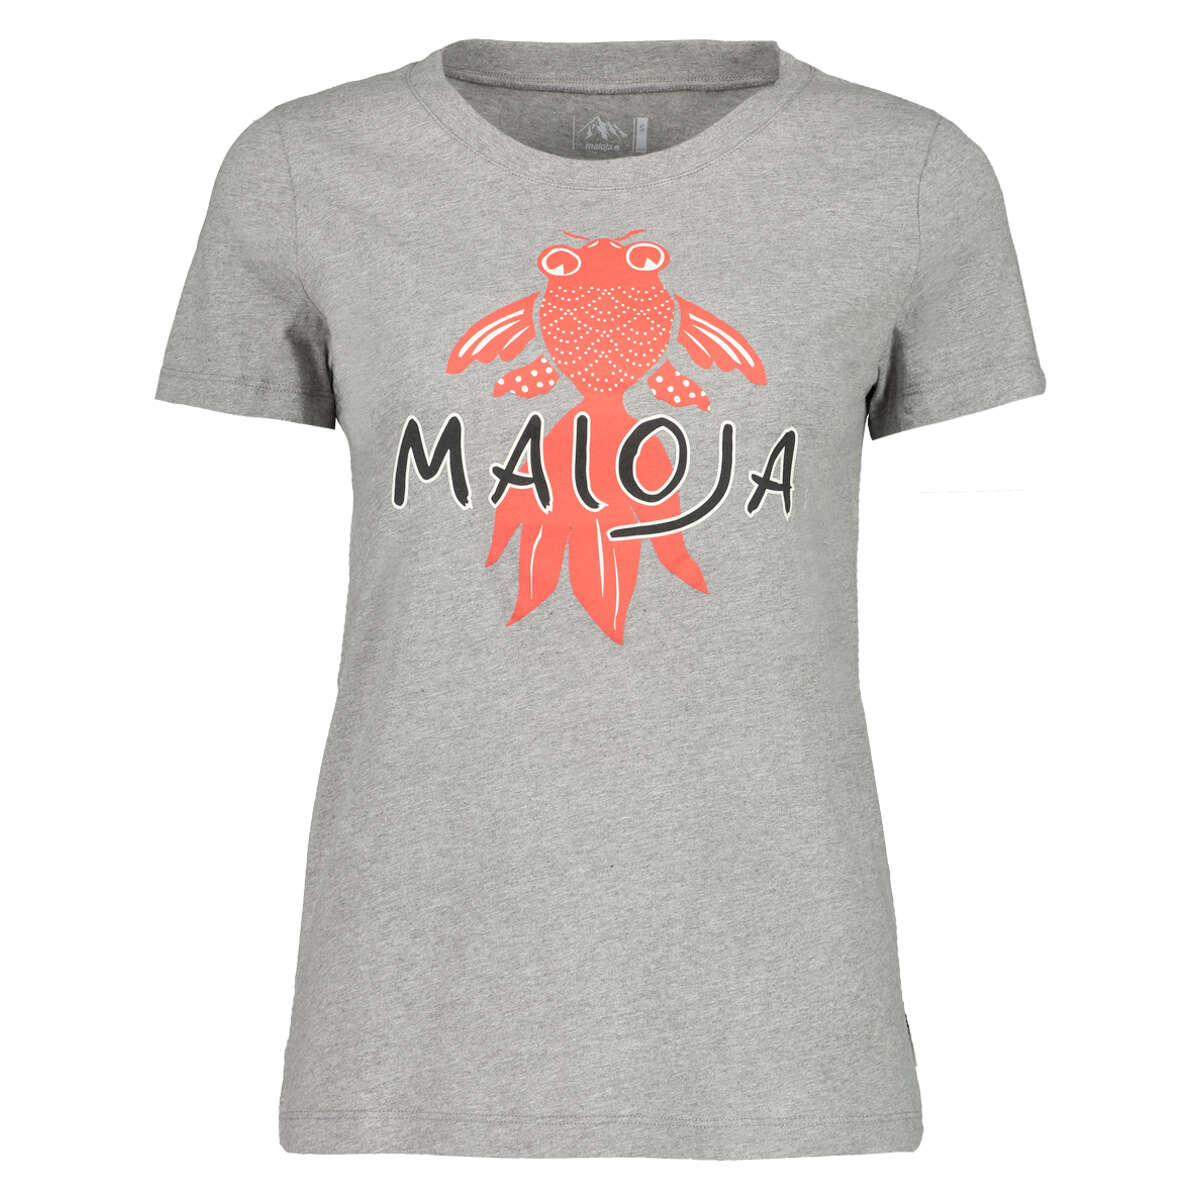 Maloja Girls T-Shirt PuorgiaM. Grey Melange